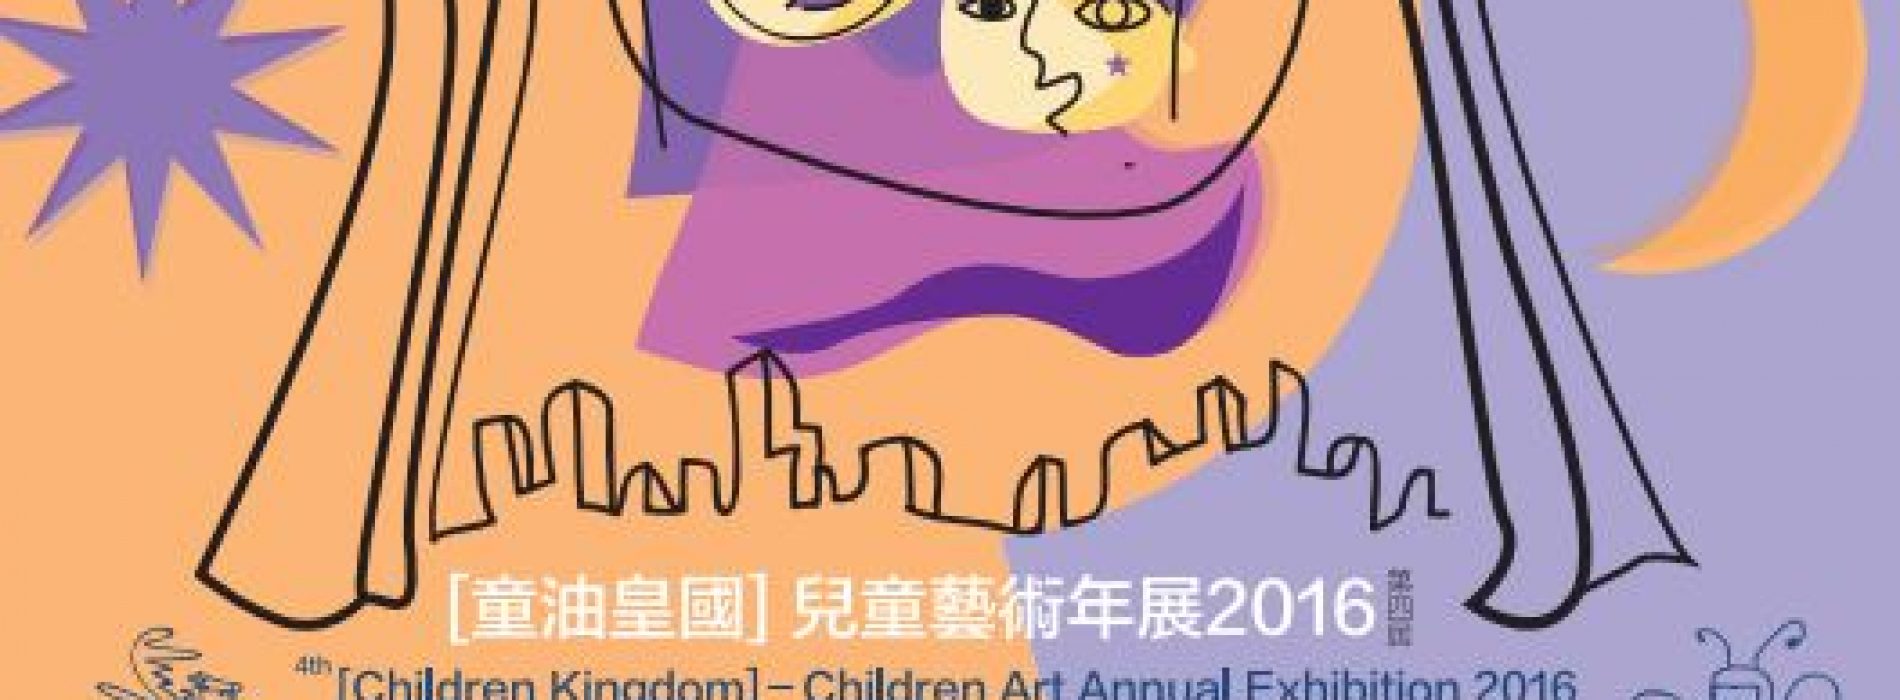 第四屆[童油皇國] 兒童藝術年展 [截止報名：8月15日]